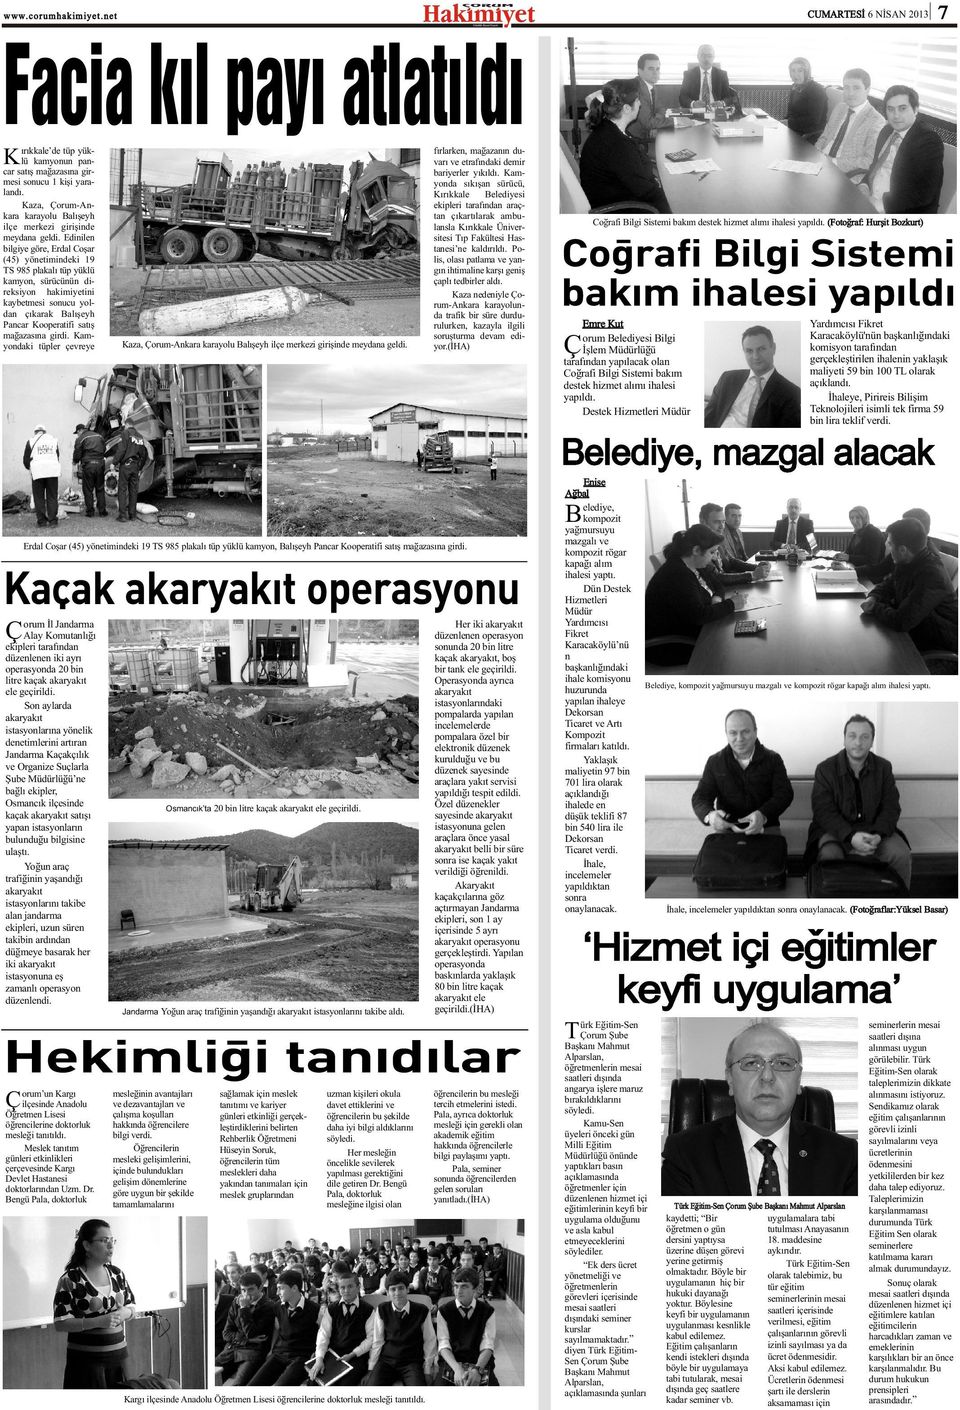 Edinilen bilgiye göre, Erdal Coþar (45) yönetimindeki 19 TS 985 plakalý tüp yüklü kamyon, sürücünün direksiyon hakimiyetini kaybetmesi sonucu yoldan çýkarak Balýþeyh Pancar Kooperatifi satýþ